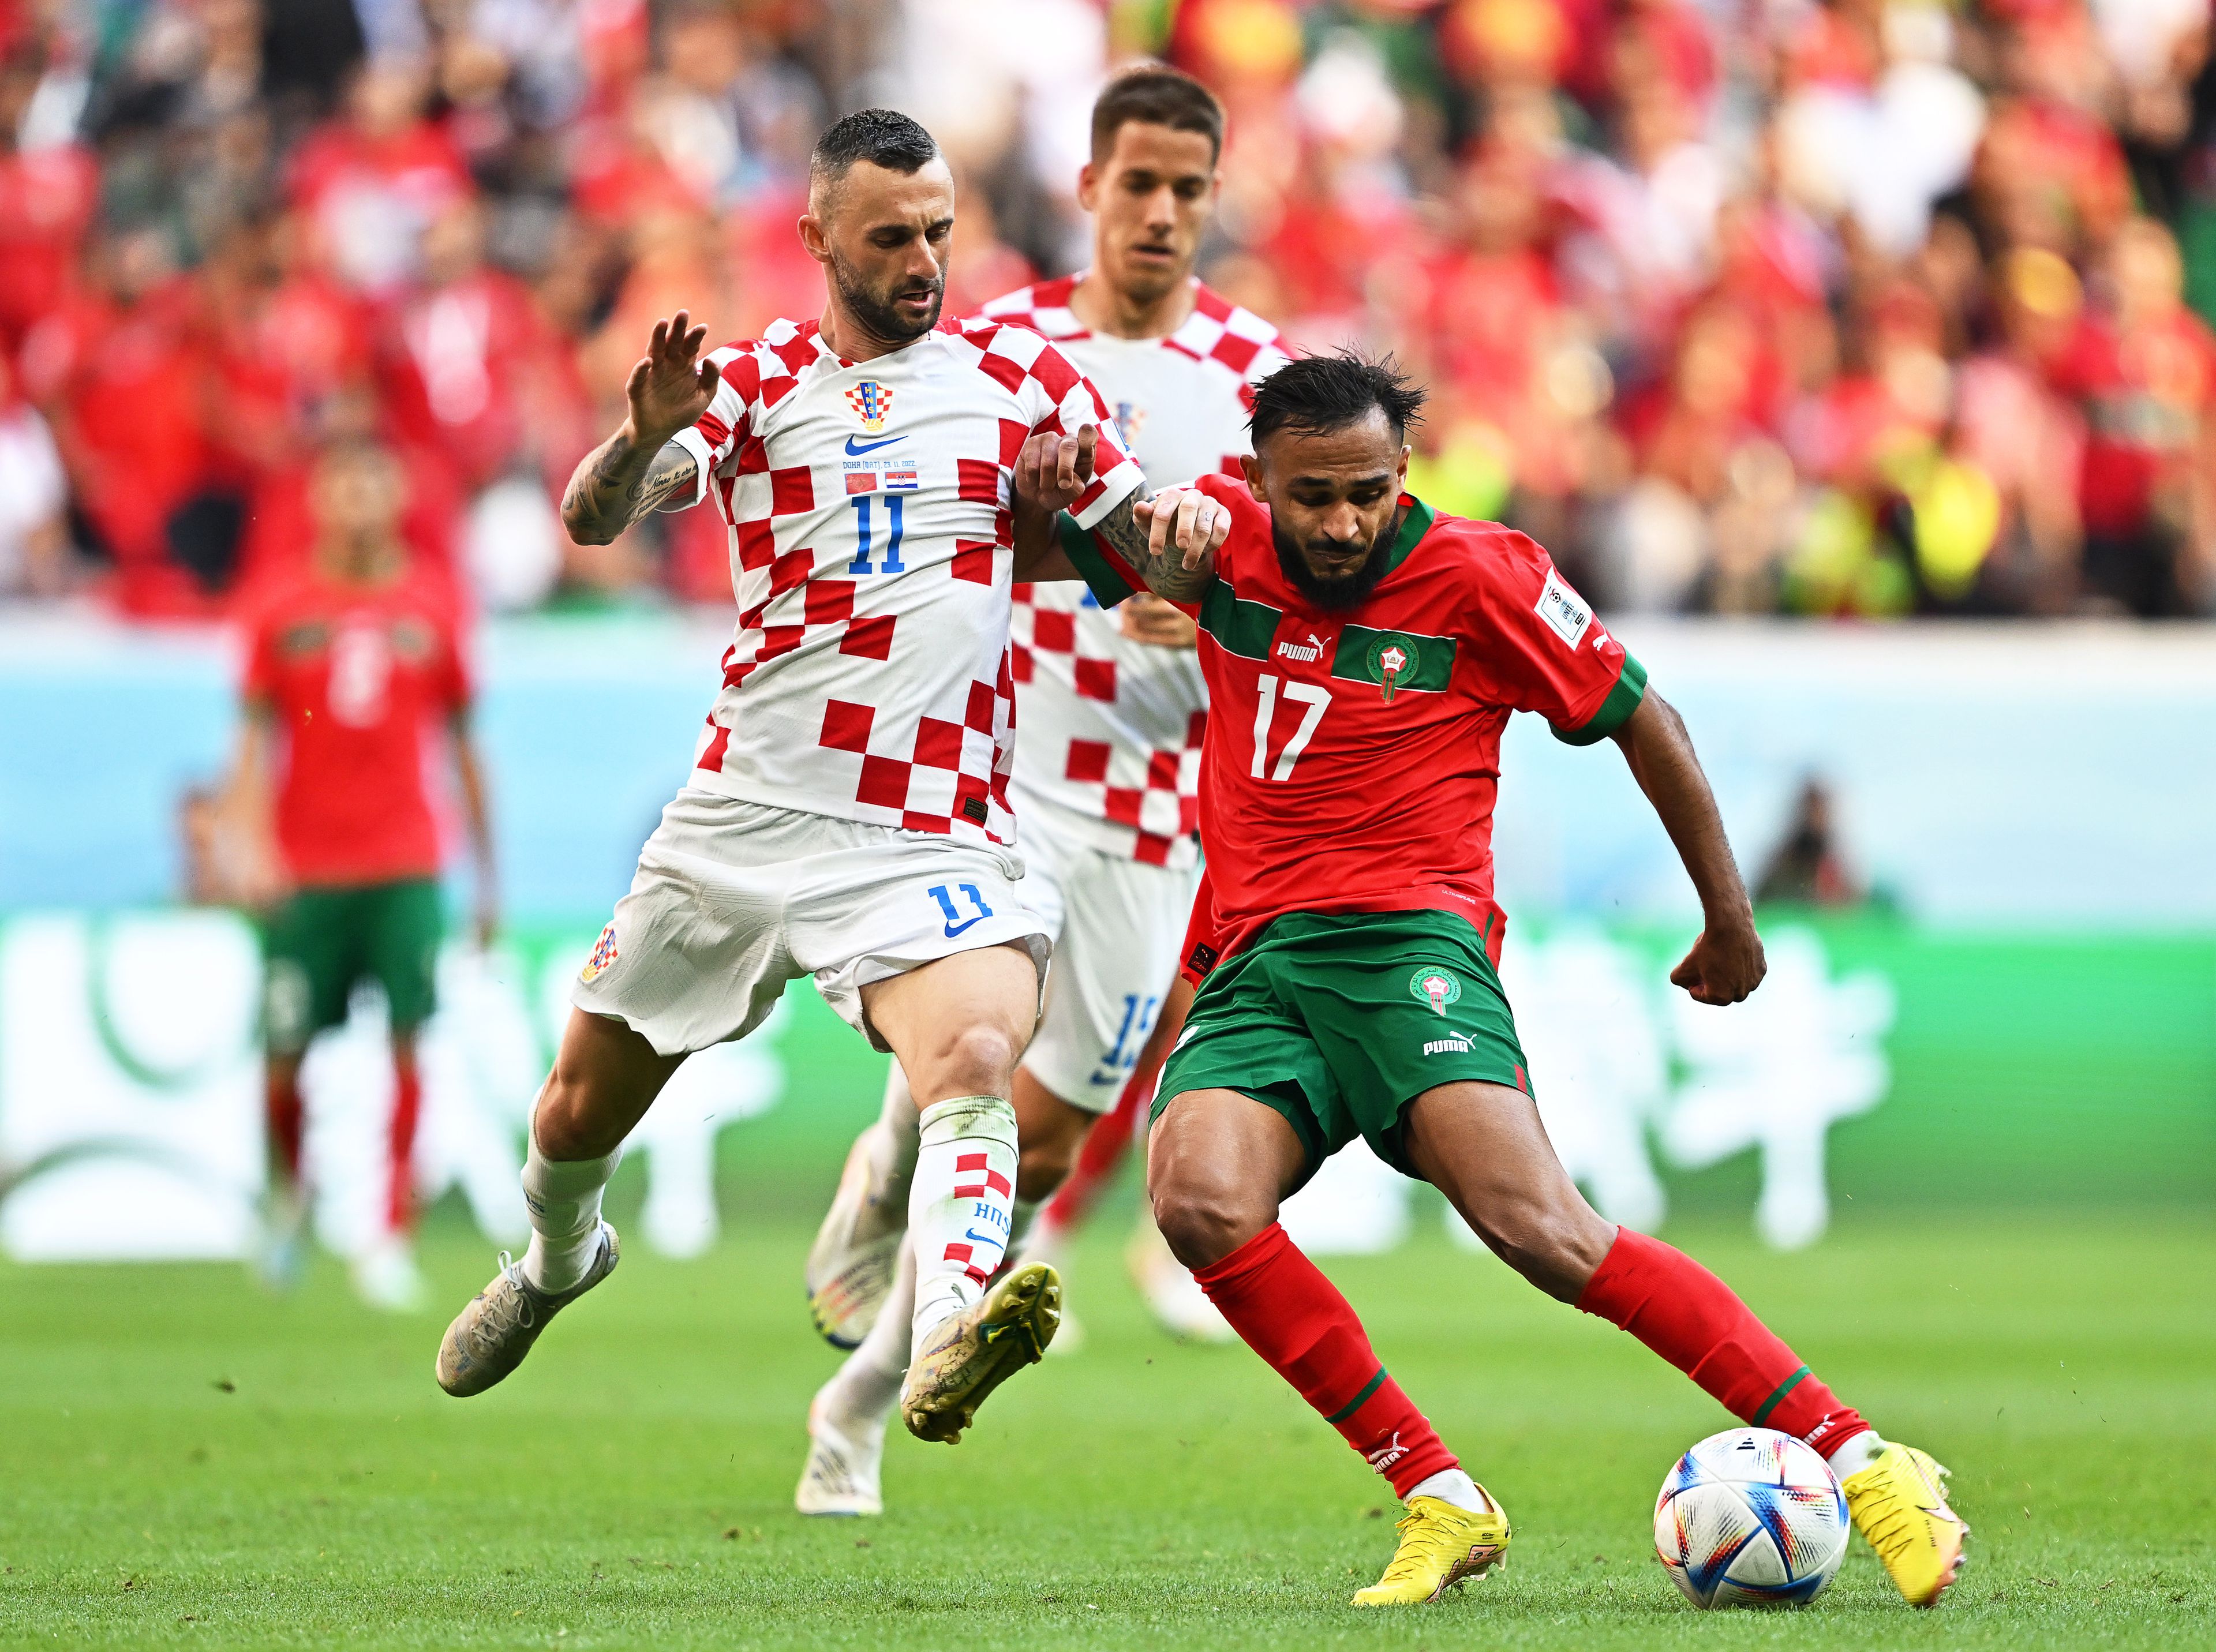 Brozovic és Bufal küzdelme a labdáért a Marokkó–Horvátország világbajnoki meccsen (Fotó: EPA/Noushad Thekkayil)